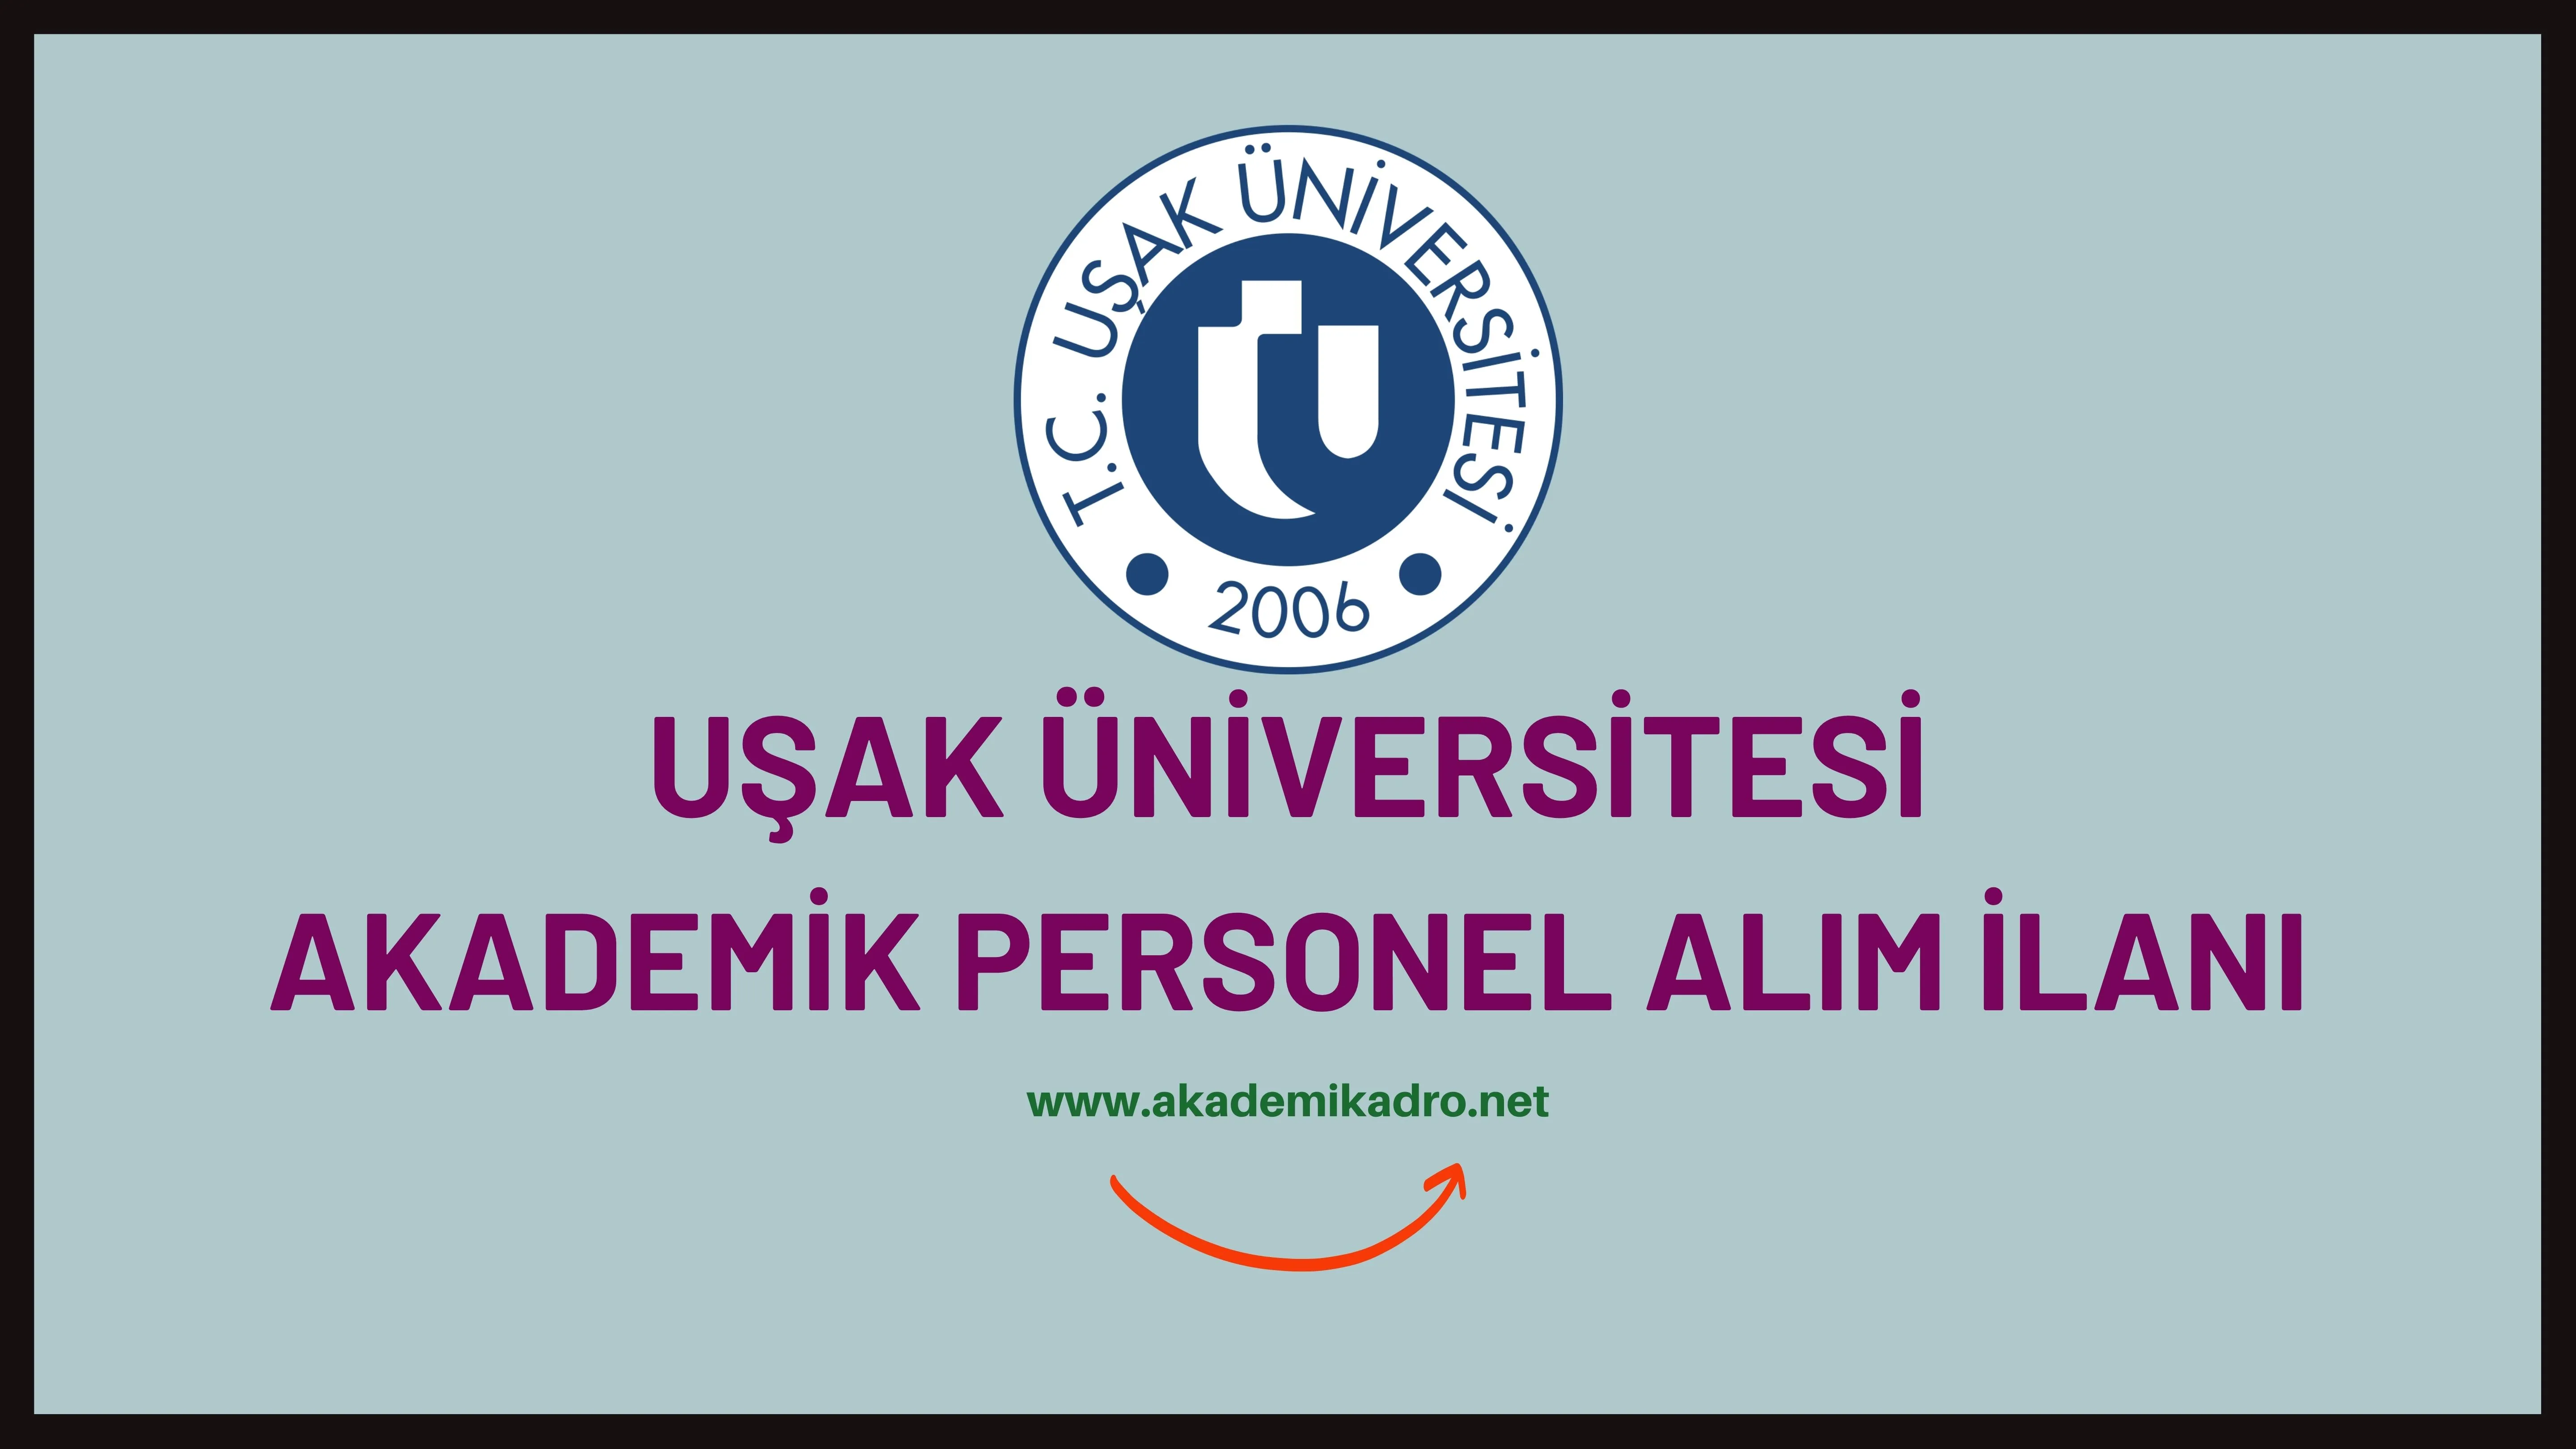 Uşak Üniversitesi birçok alandan 24 akademik personel alacak.